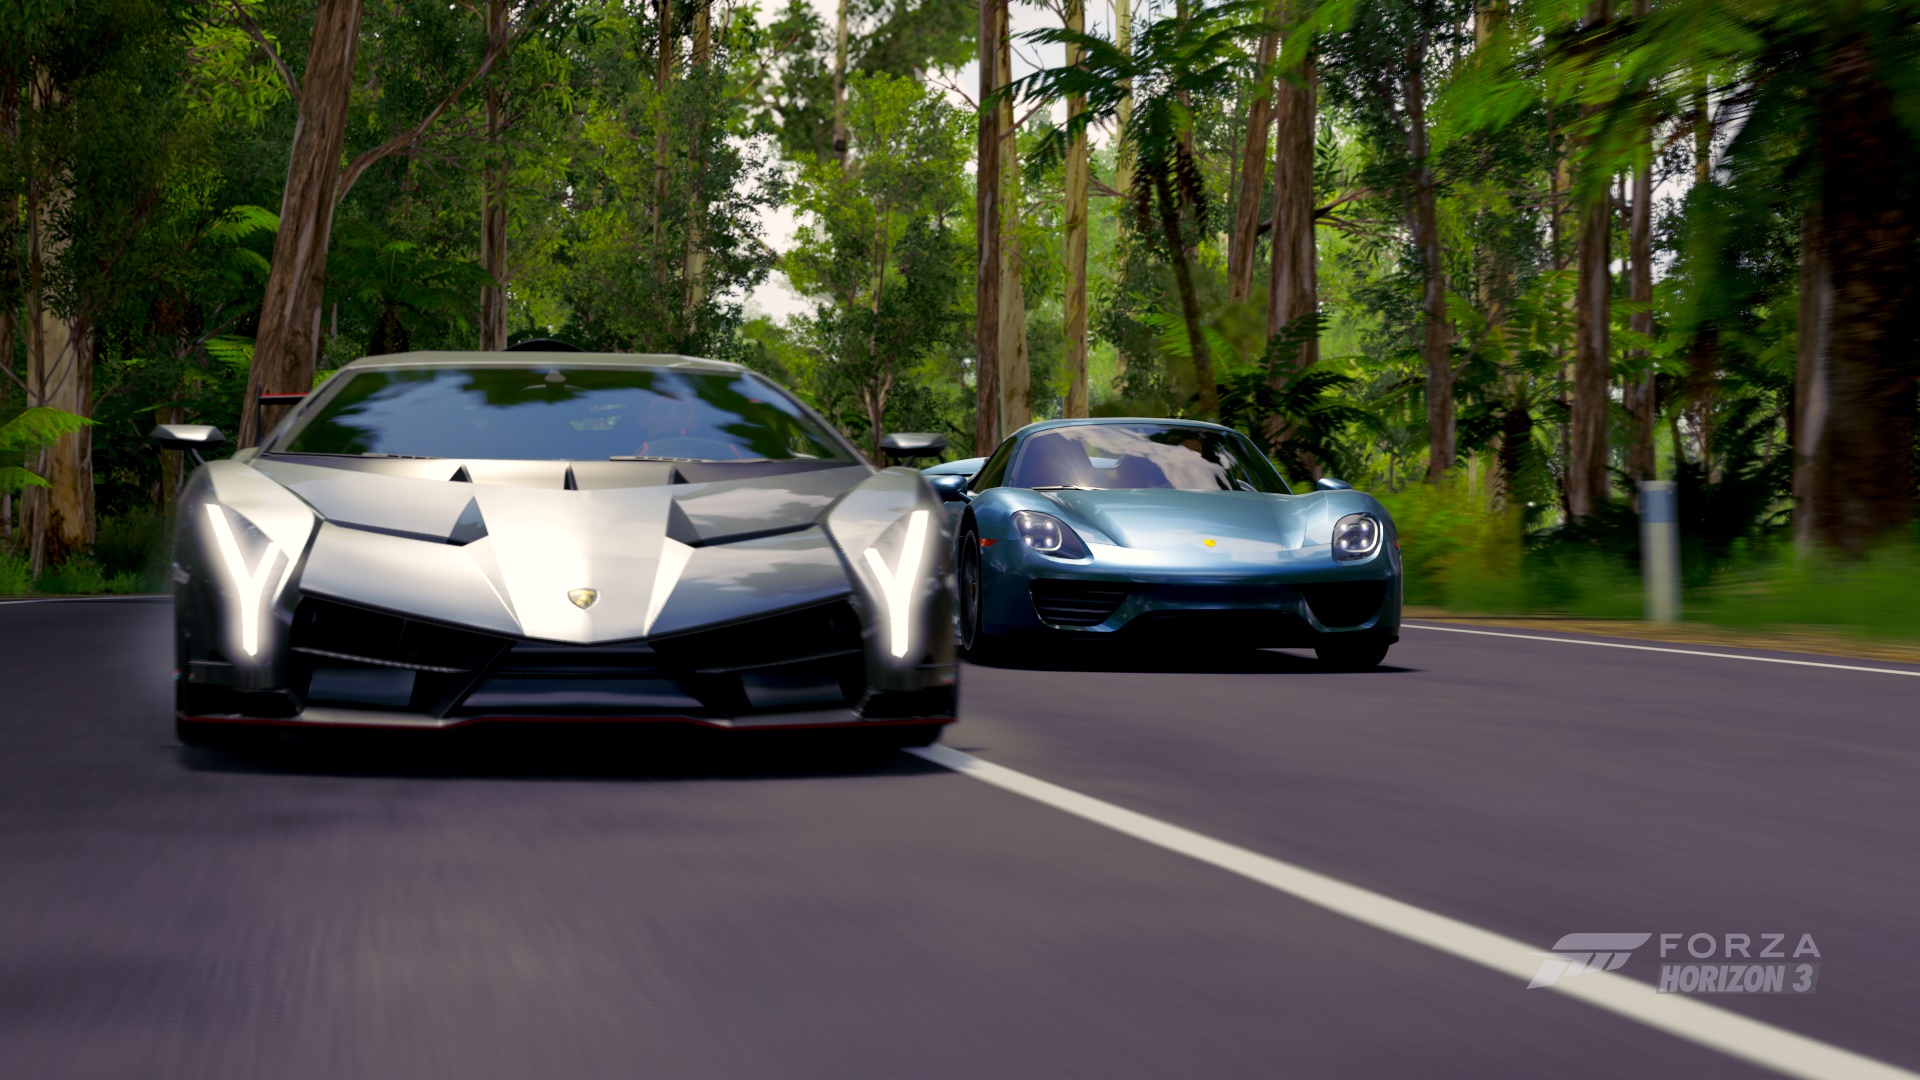 Lamborghini Veneno and Porshe 918